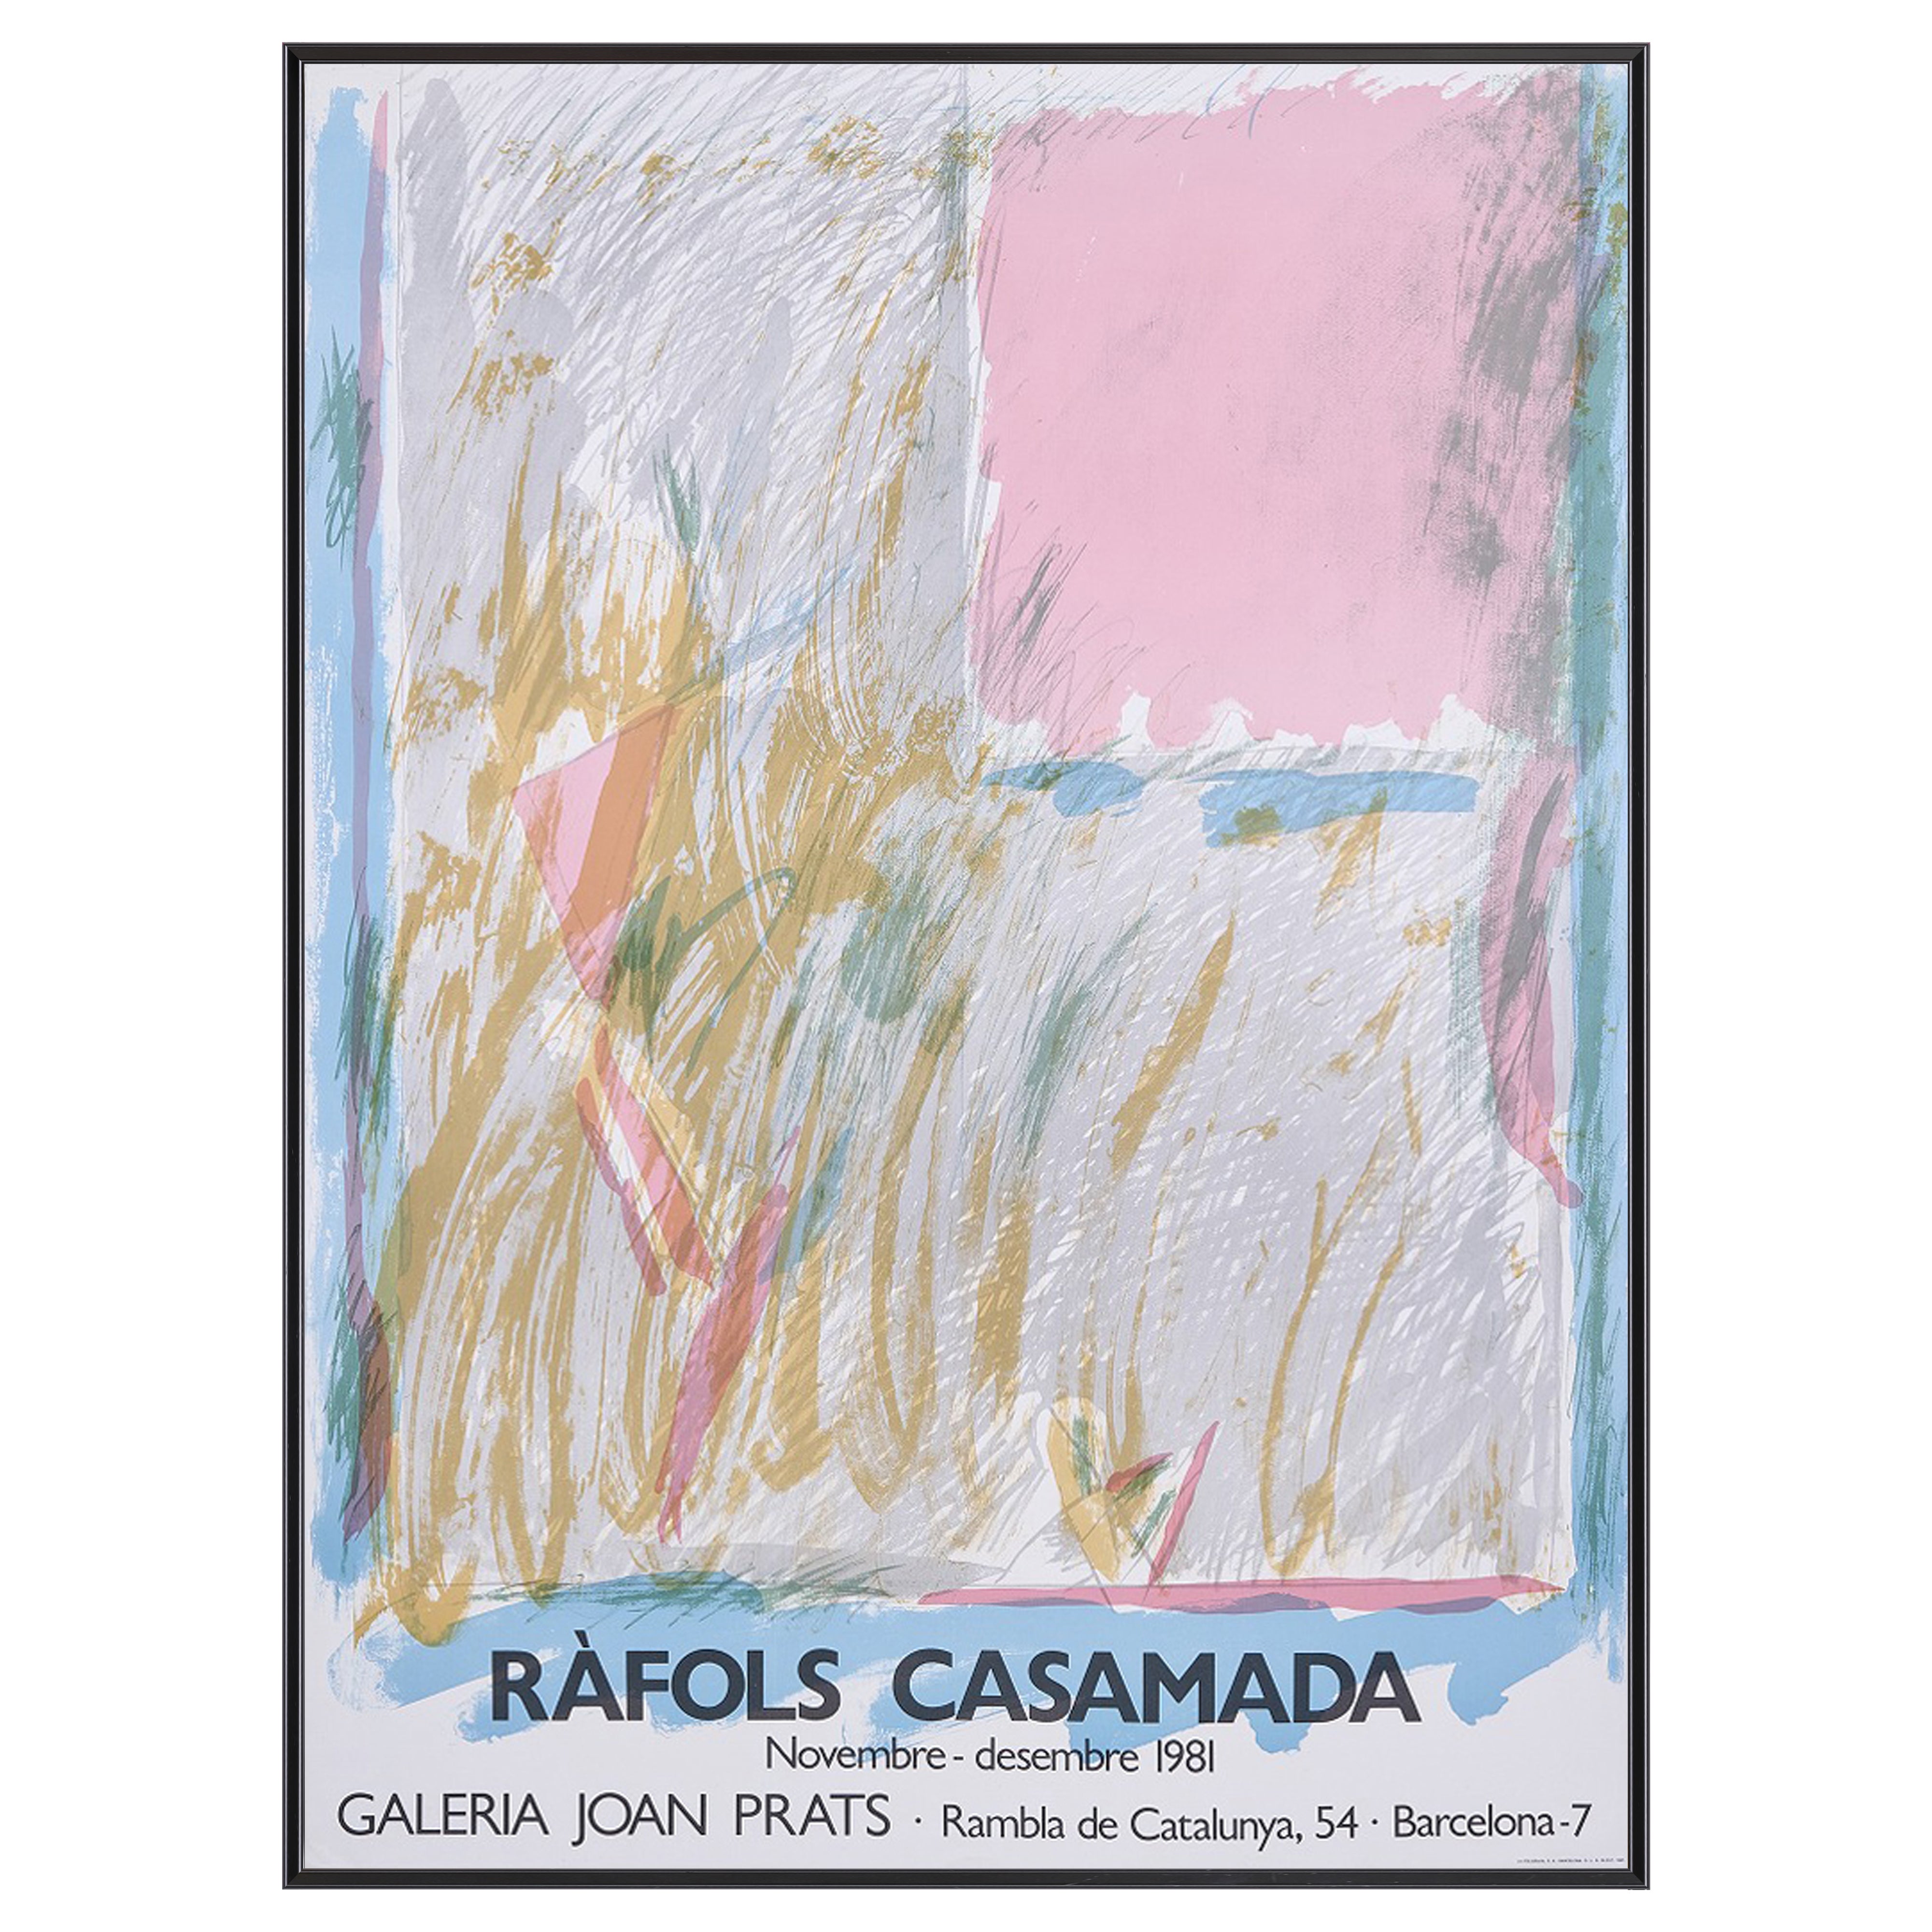 【限定5枚】RAFOLS CASAMADA - GALERIA JOAN PRATS 1981 / アルベルト・ラフォルス・カサマダ